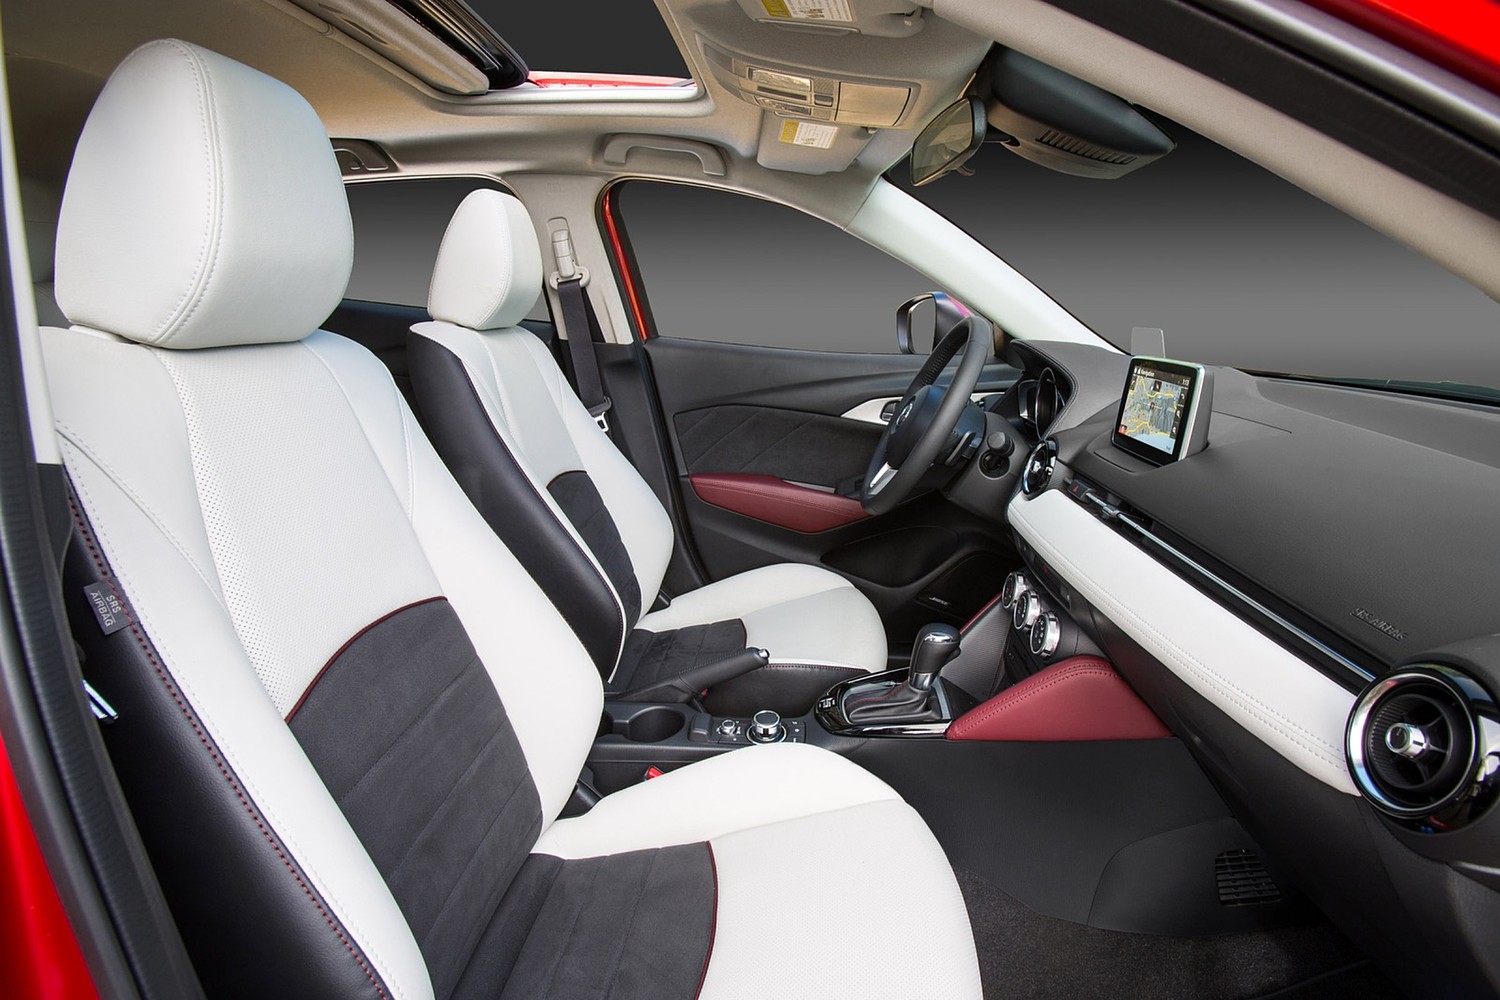 2016 Mazda CX-3 Grand Touring 4dr SUV Interior Shown